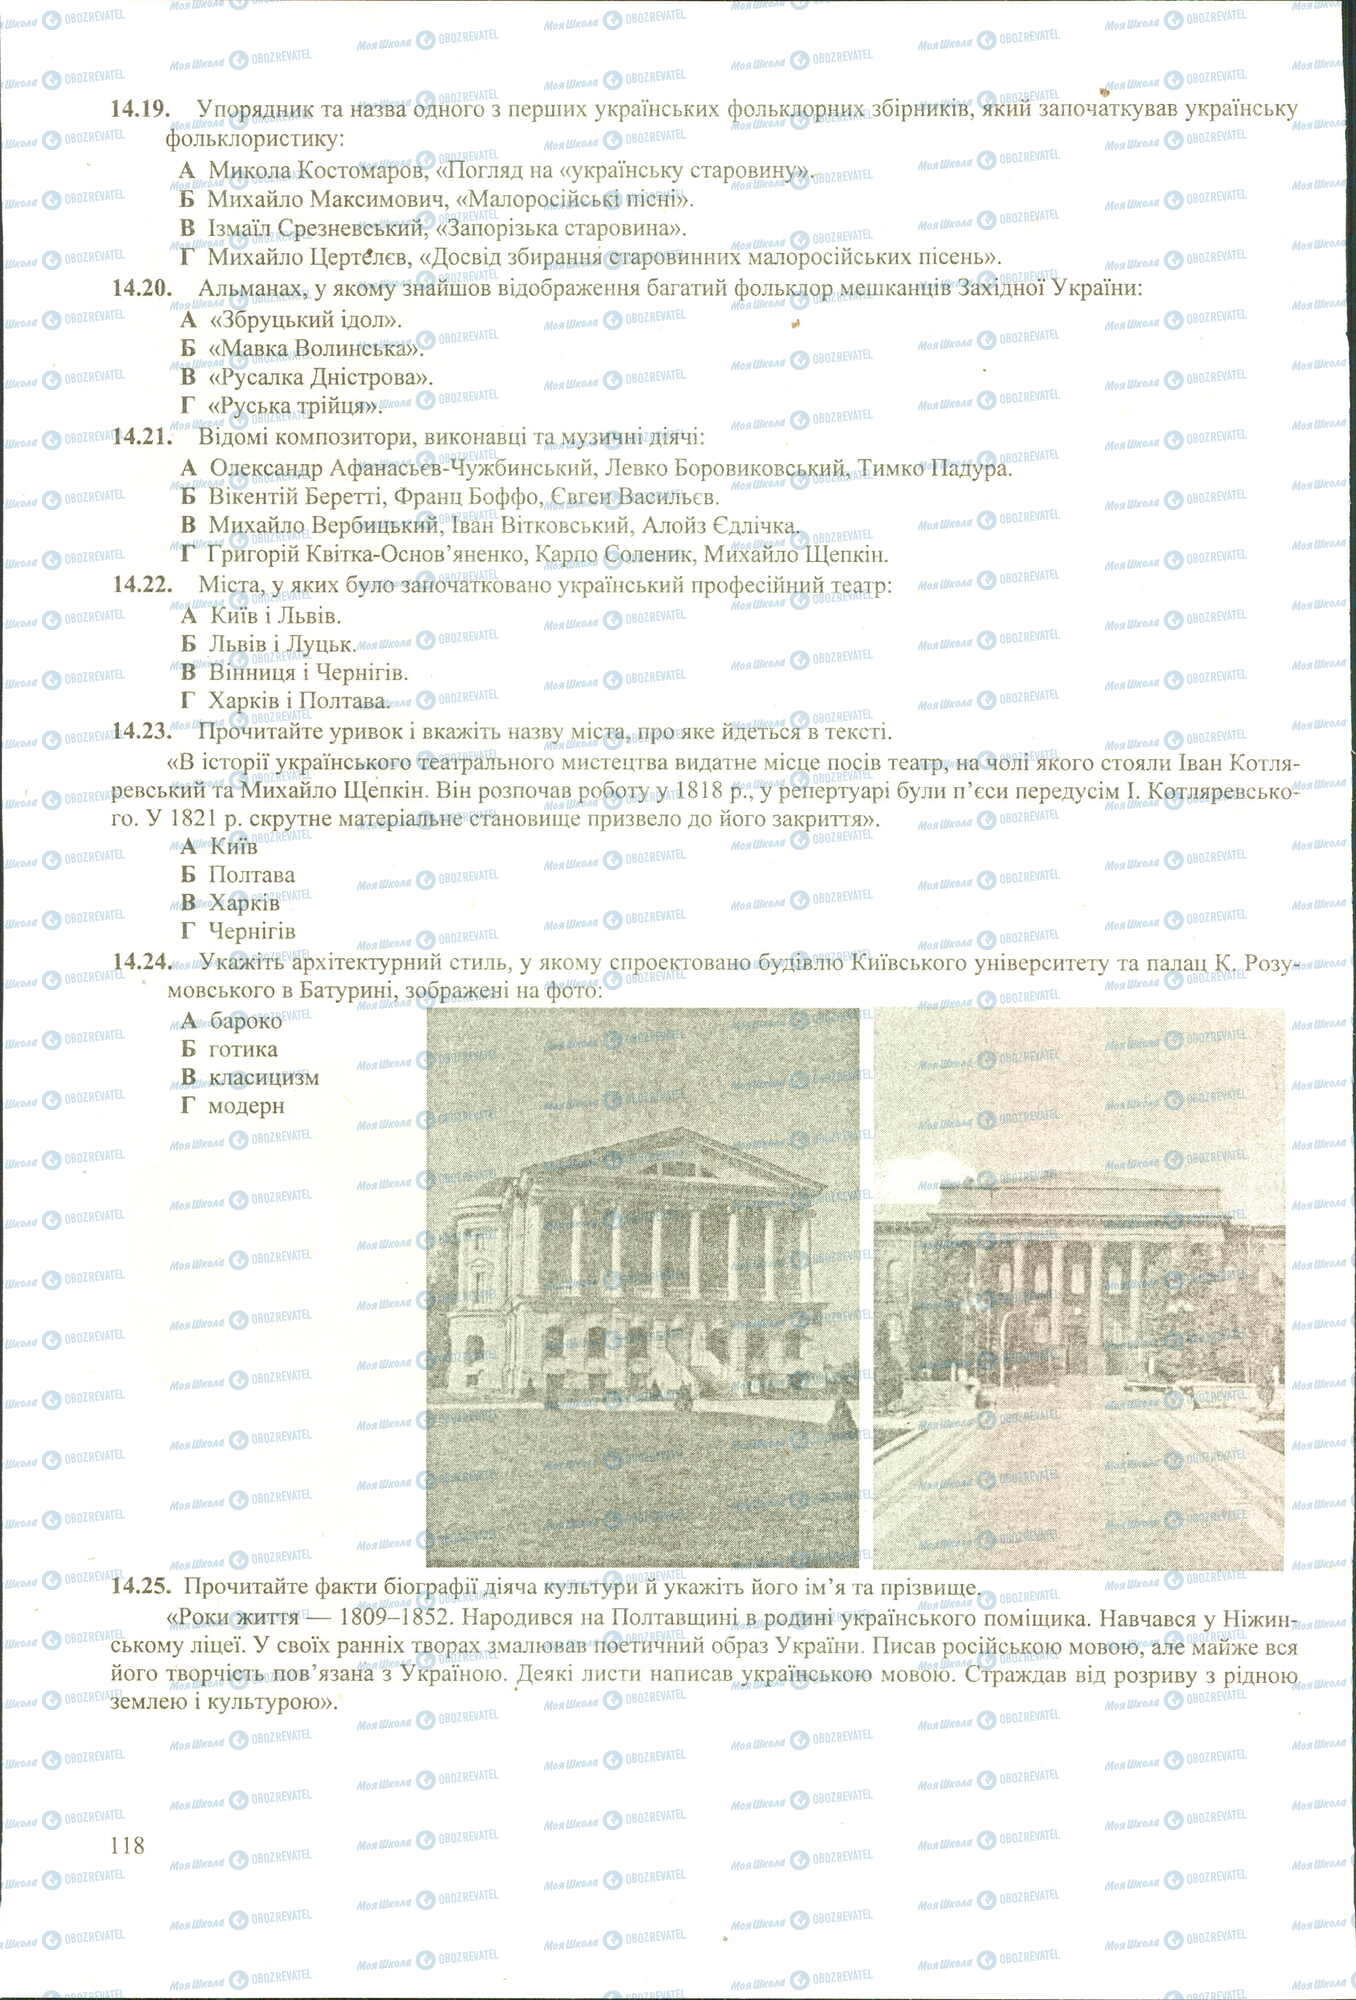 ЗНО История Украины 11 класс страница 19-25